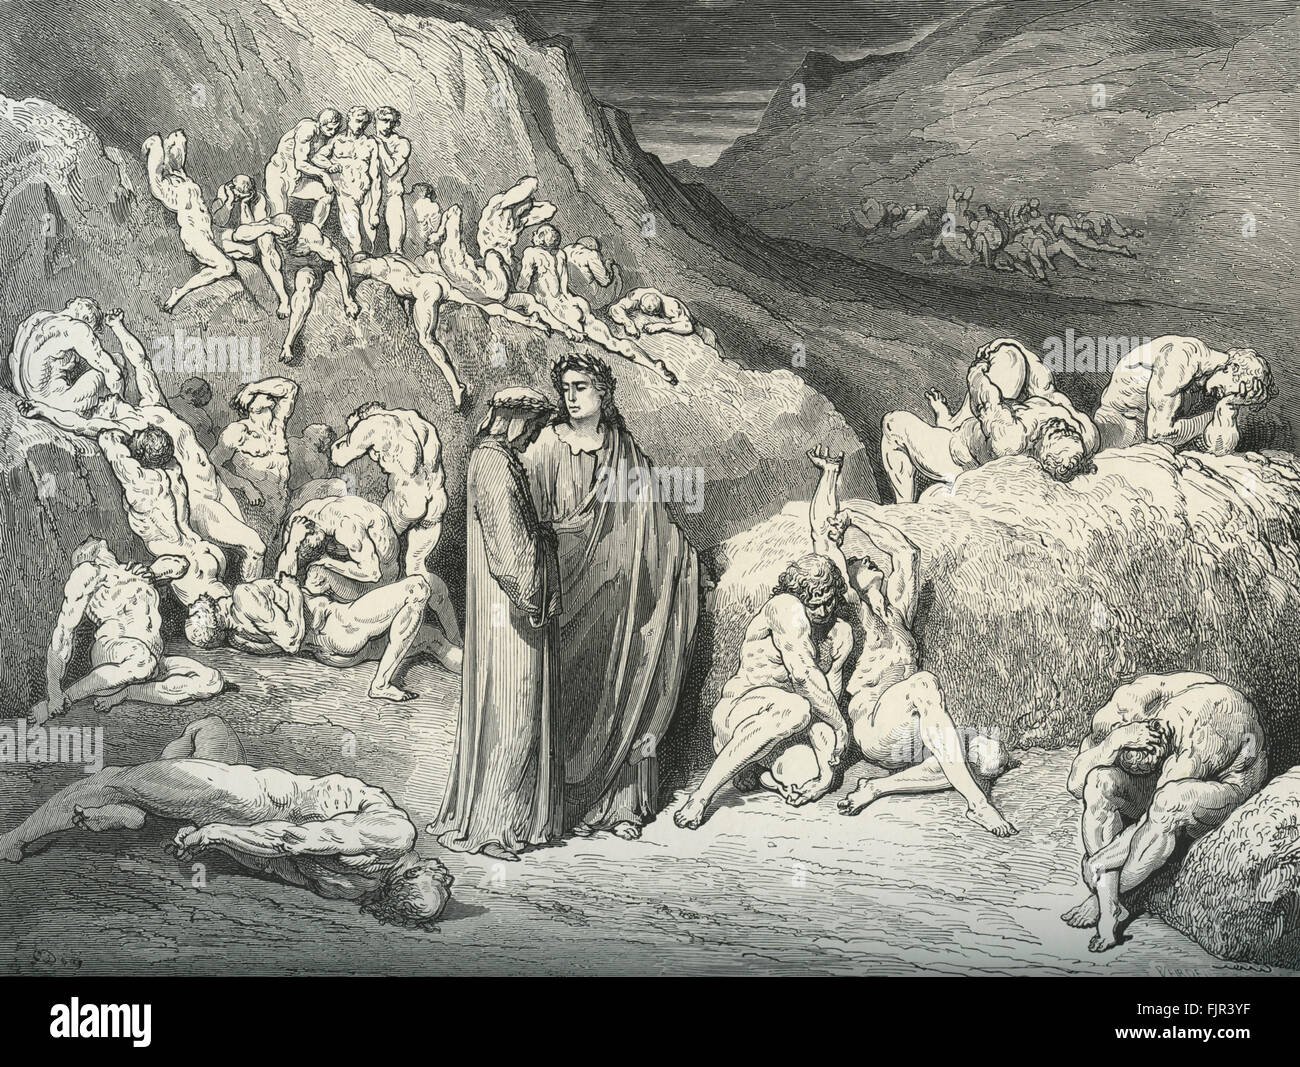 The Divine Comedy, Hell' by Dante Alighieri - La Divina Commedia